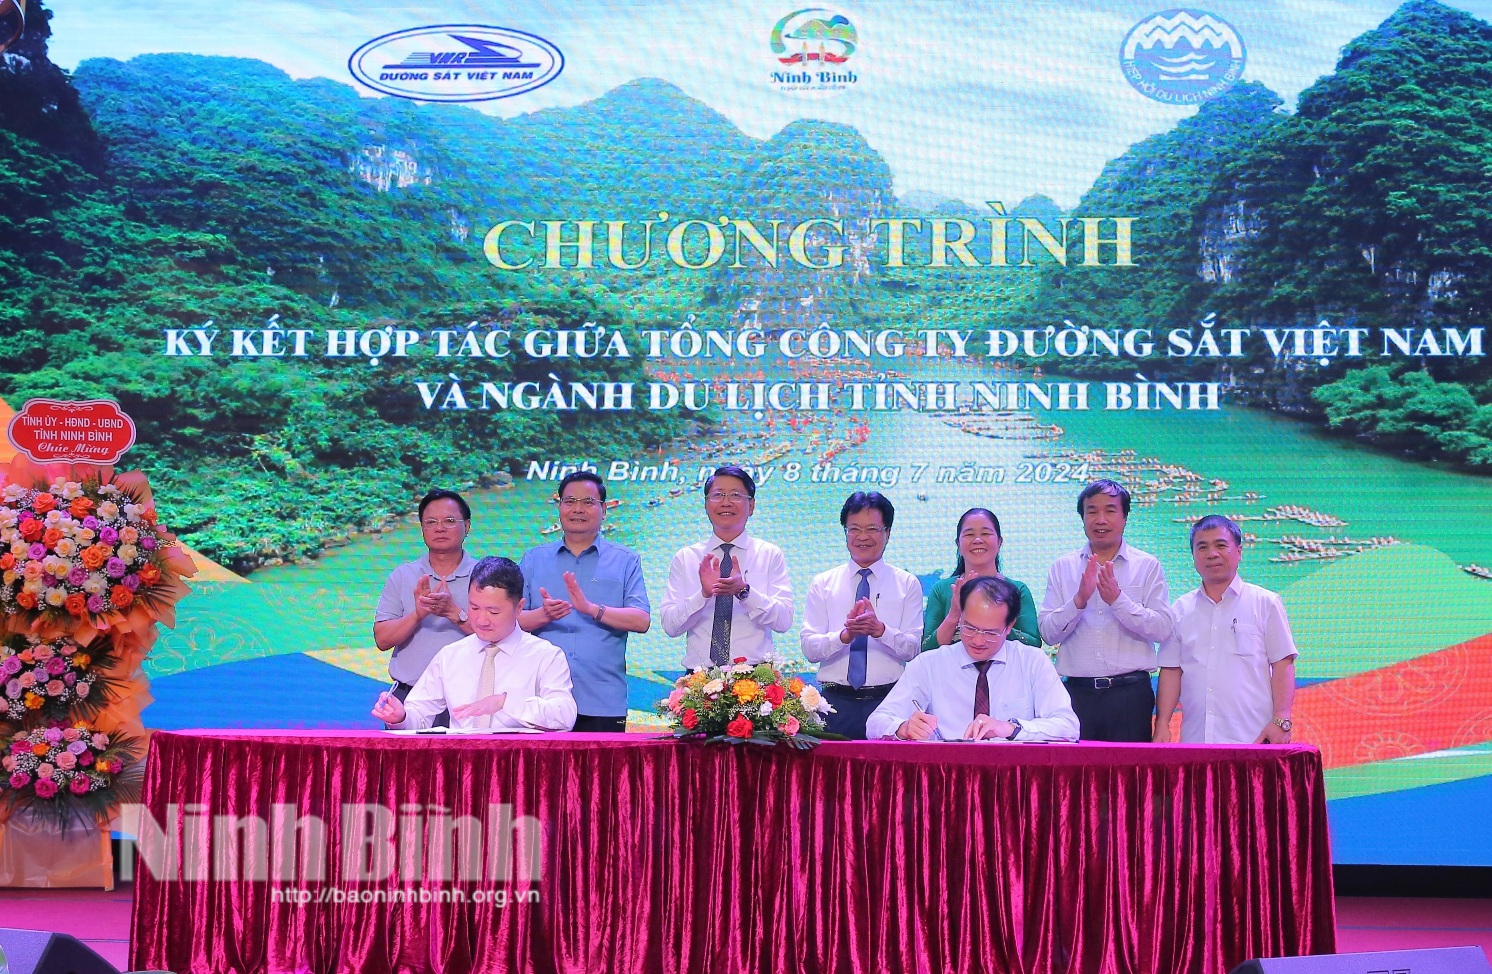 Ký kết hợp tác giữa Tổng Công ty đường sắt Việt Nam và ngành Du lịch Ninh Bình